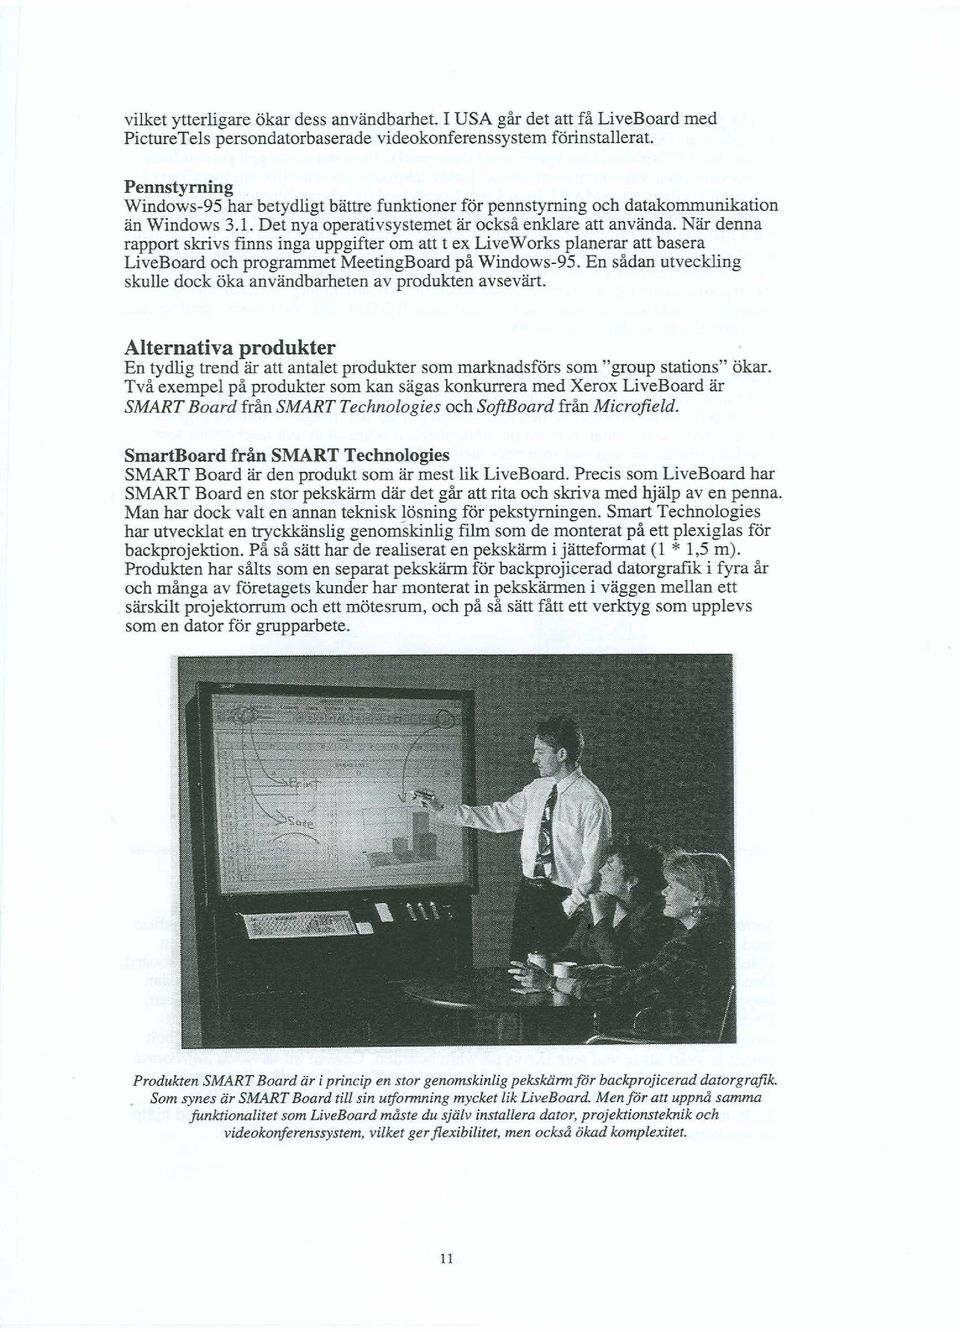 När denna rapport skrivs finns inga uppgifter om att t ex LiveWorks planerar att basera LiveBoard och programmet MeetingBoard på Windows-95.